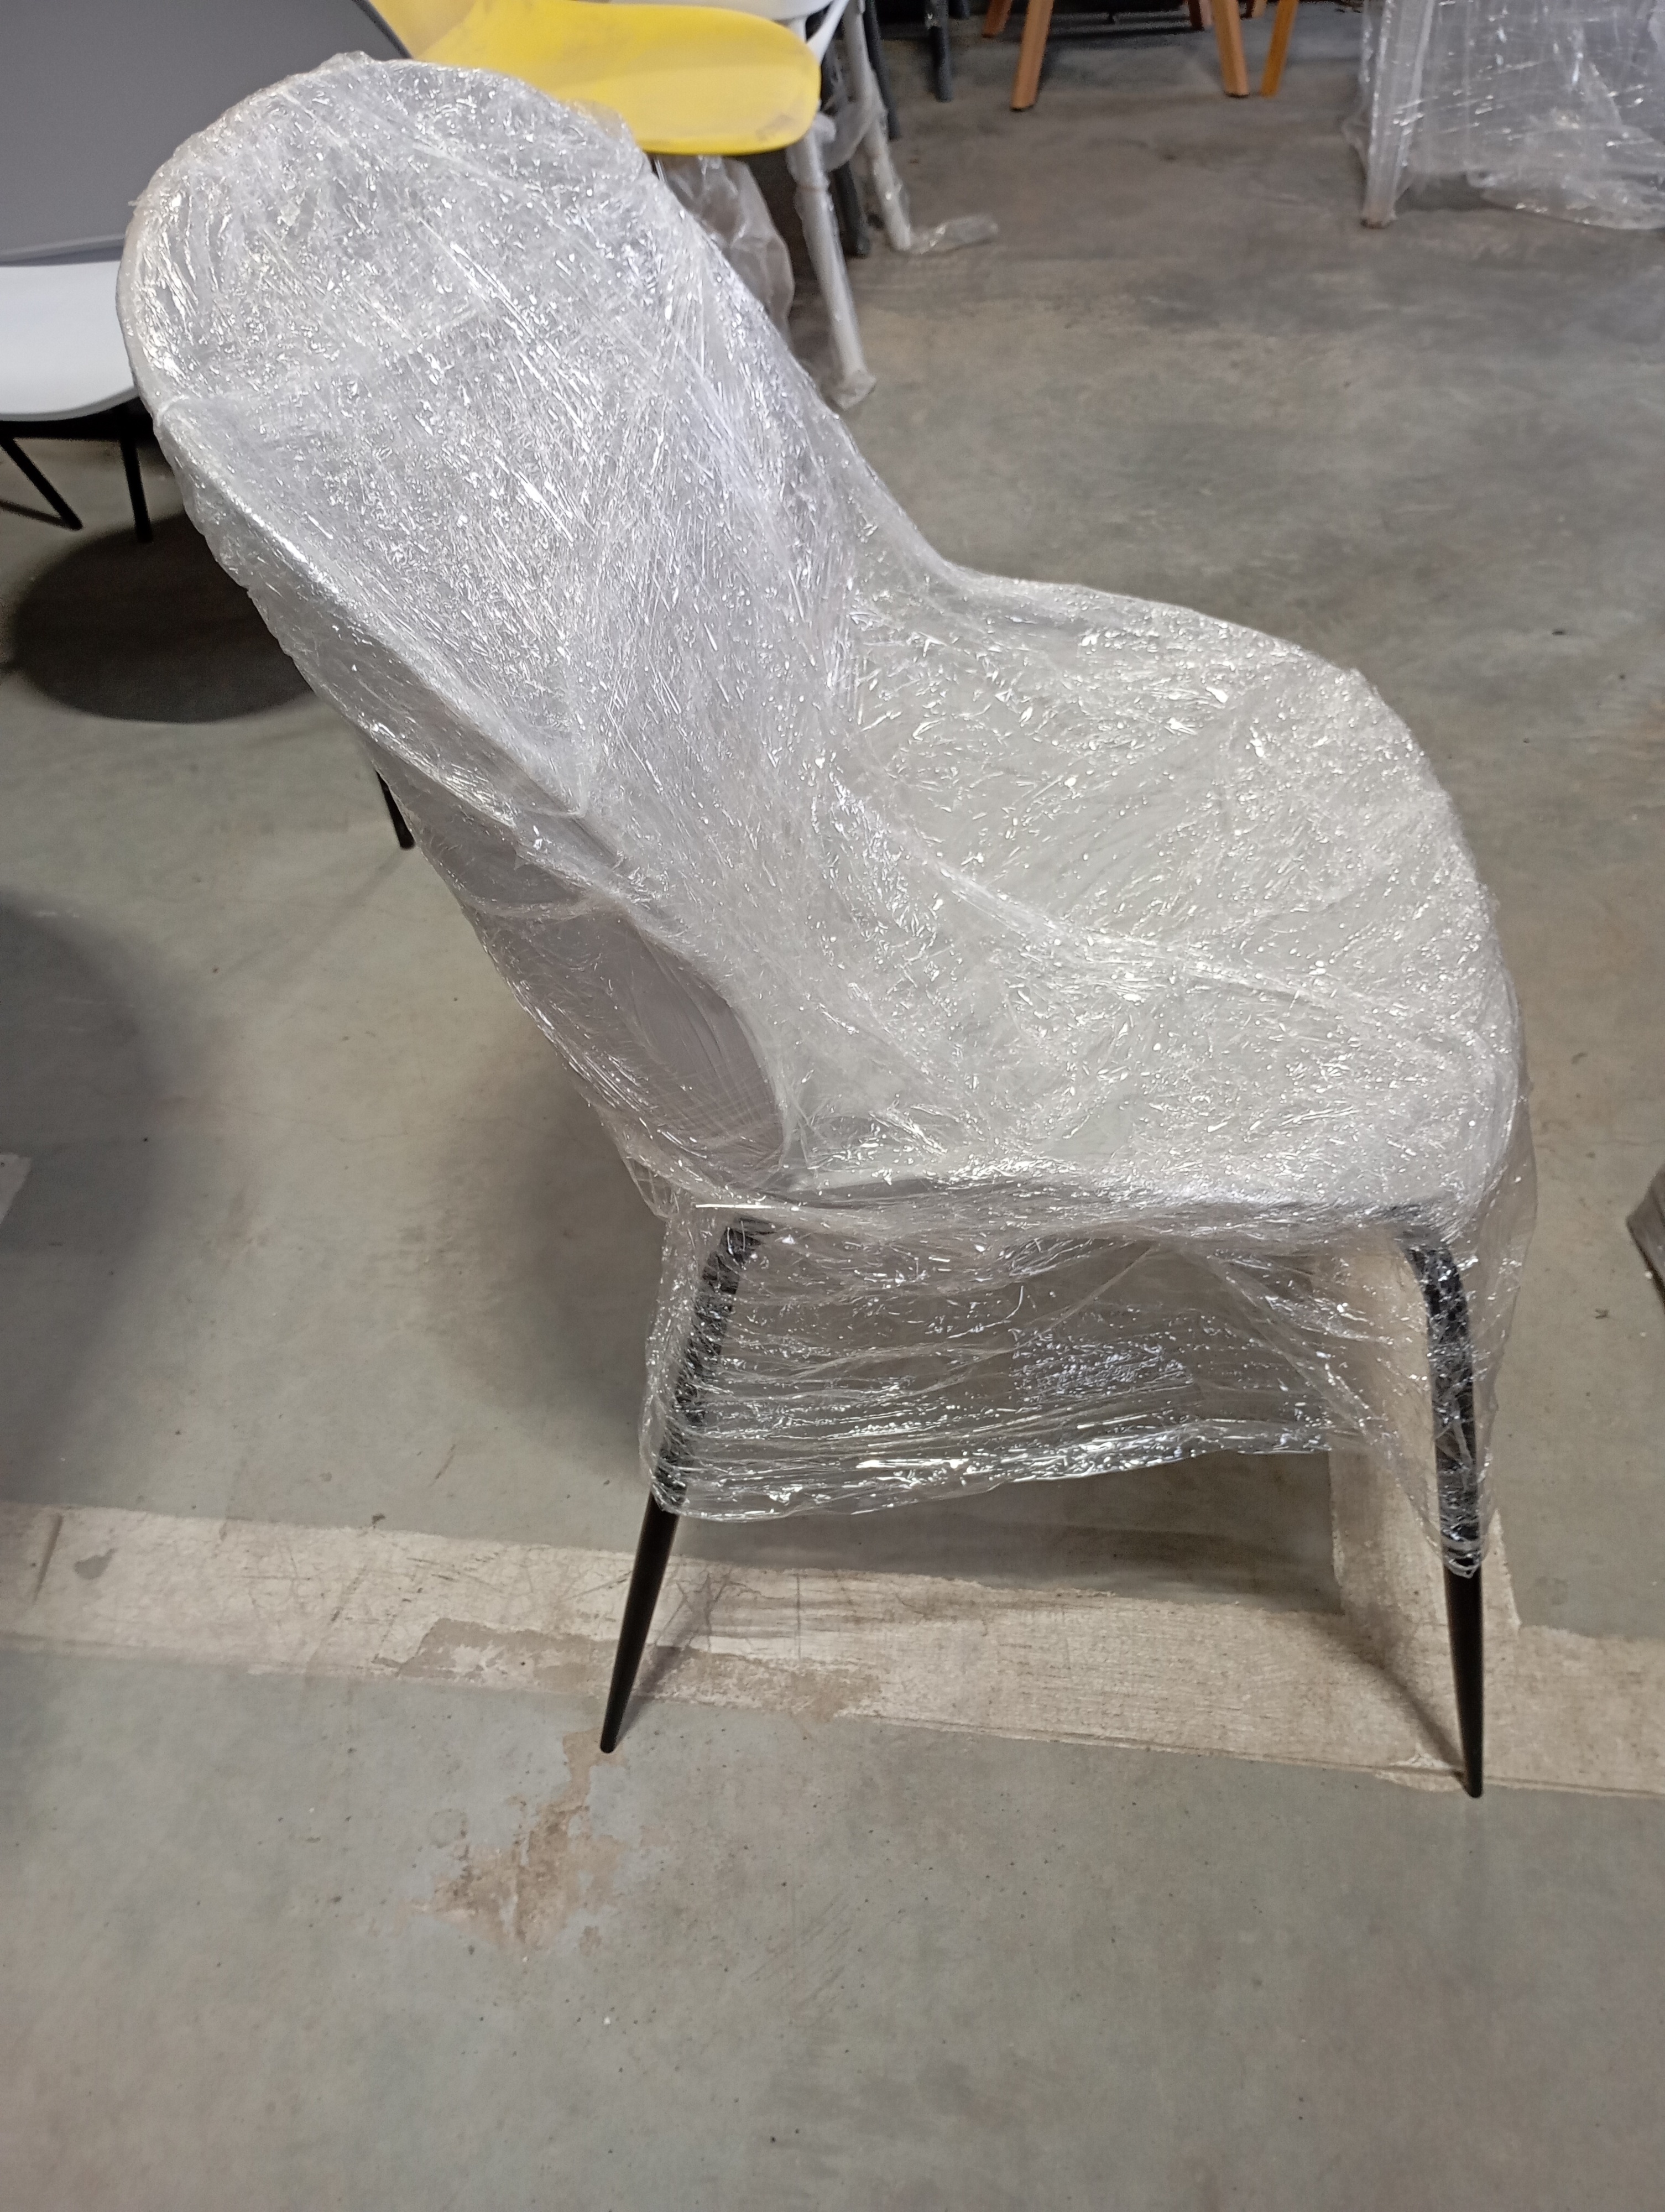 Стул Beetle Chair (mod.70) металл/пластик, 46*57,5*86см, серый